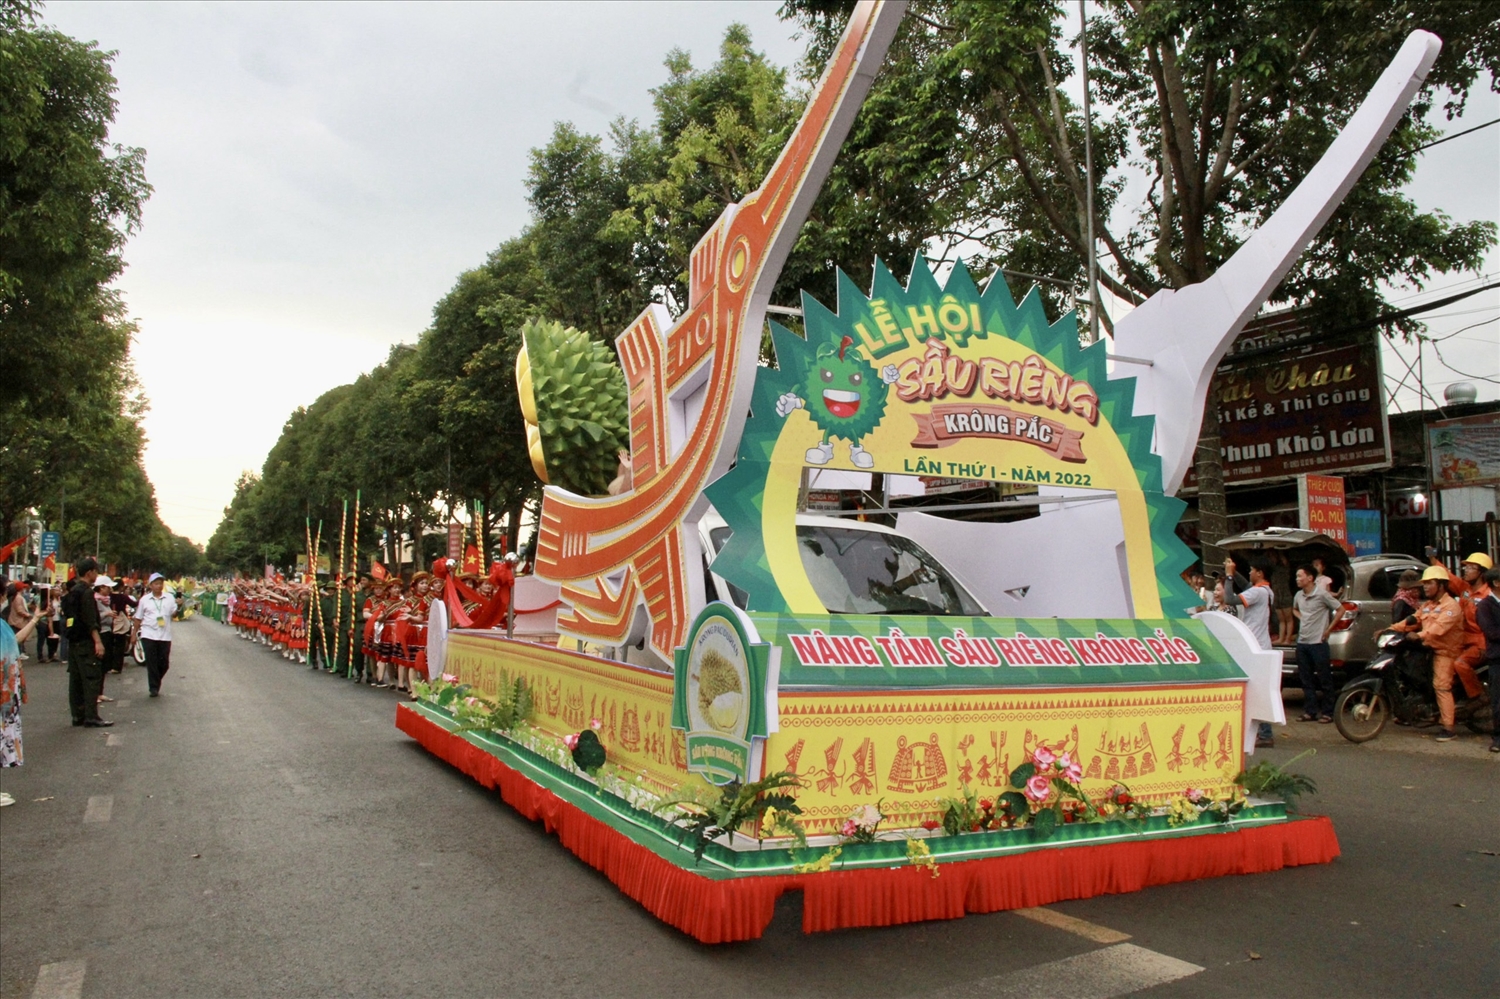 Đoàn xe của Ban Tổ chức Lễ hội mang biểu tượng đặc sản của huyện Krông Pắc là sầu riêng